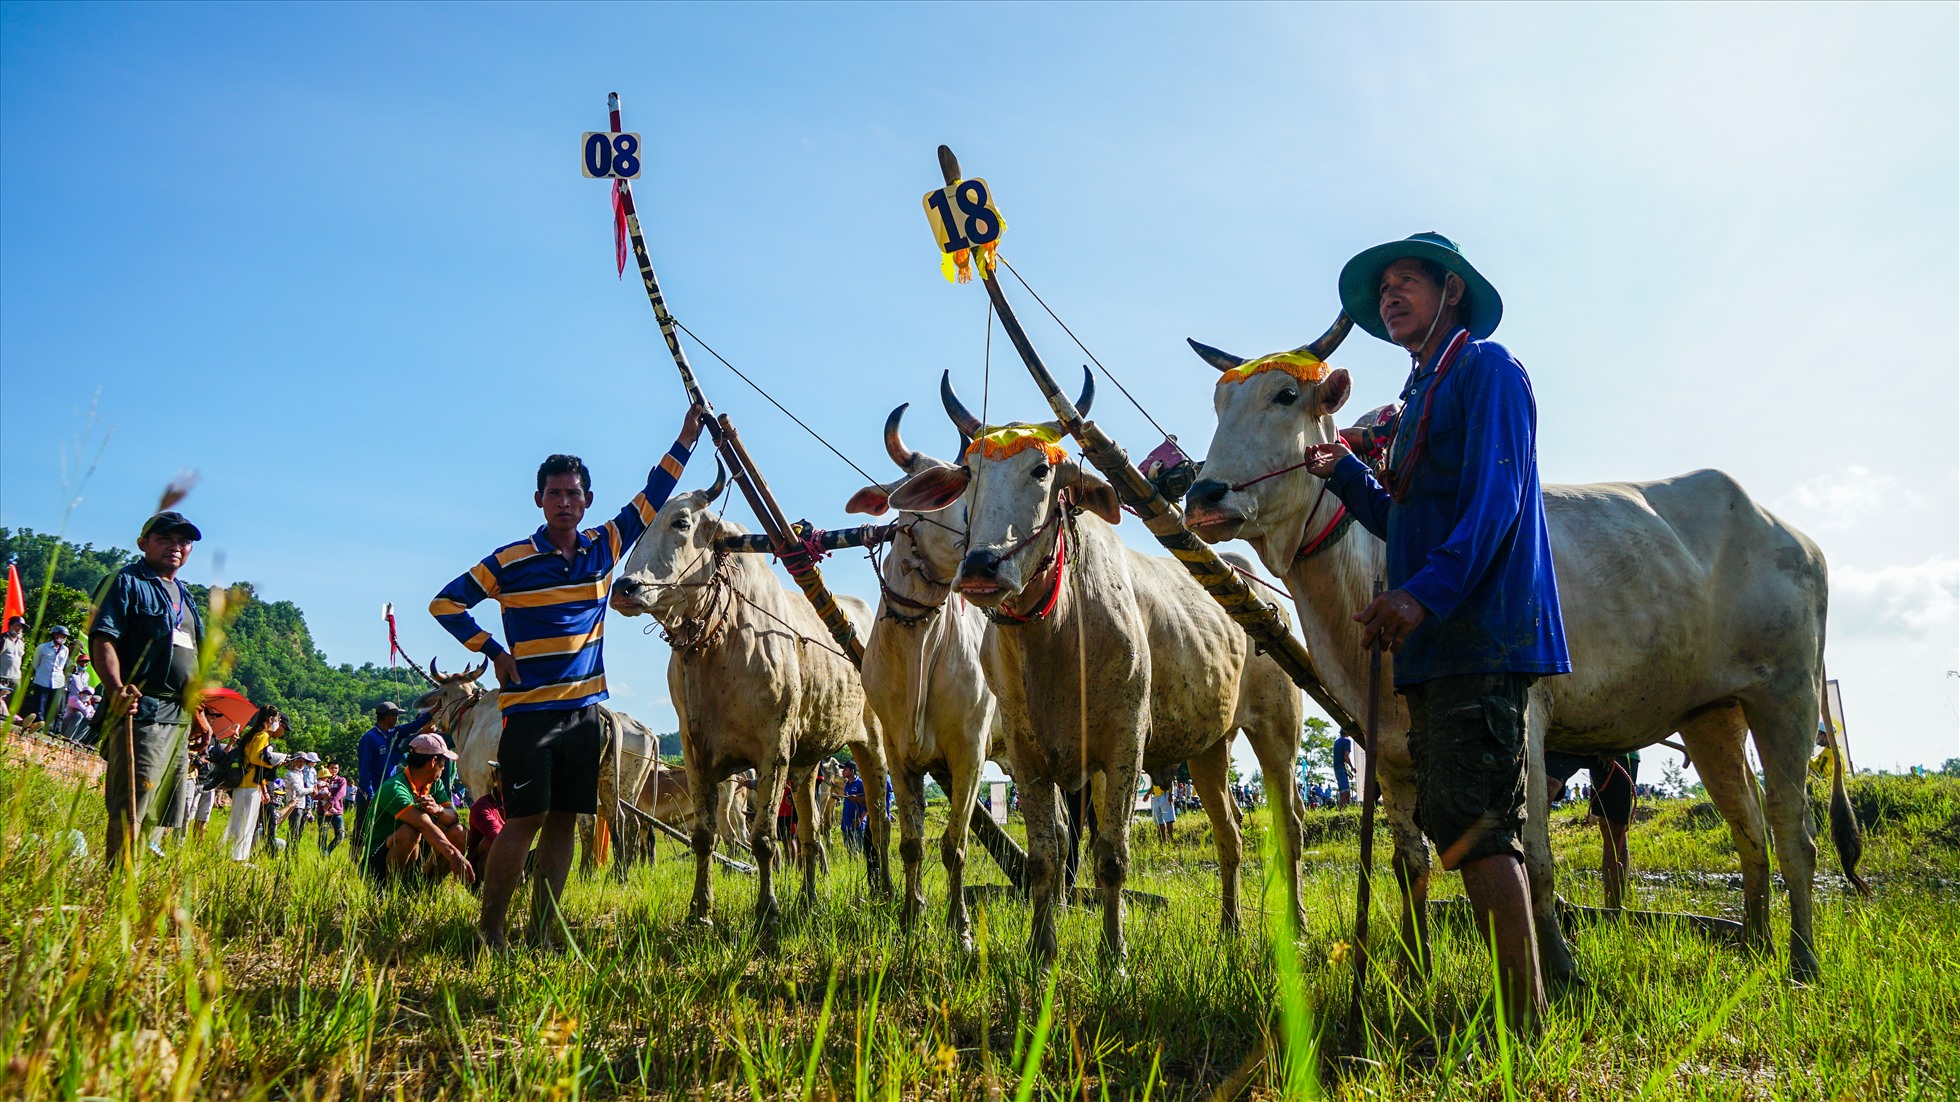 Hội đua bò năm nay hướng đến kỉ niệm 190 năm thành lập tỉnh An Giang, chào mừng lễ Senl Đôlta năm 2022. Đồng thời, nhằm giữ gìn bản sắc văn hoá truyền thống, xây dựng khối đại đoàn kết dân tộc; nâng cao mức hưởng thụ văn hoá - tinh thần và tạo không khí vui tươi, phấn khởi nhân dịp Lễ Senl Đôlta của đồng bào dân tộc Khmer.